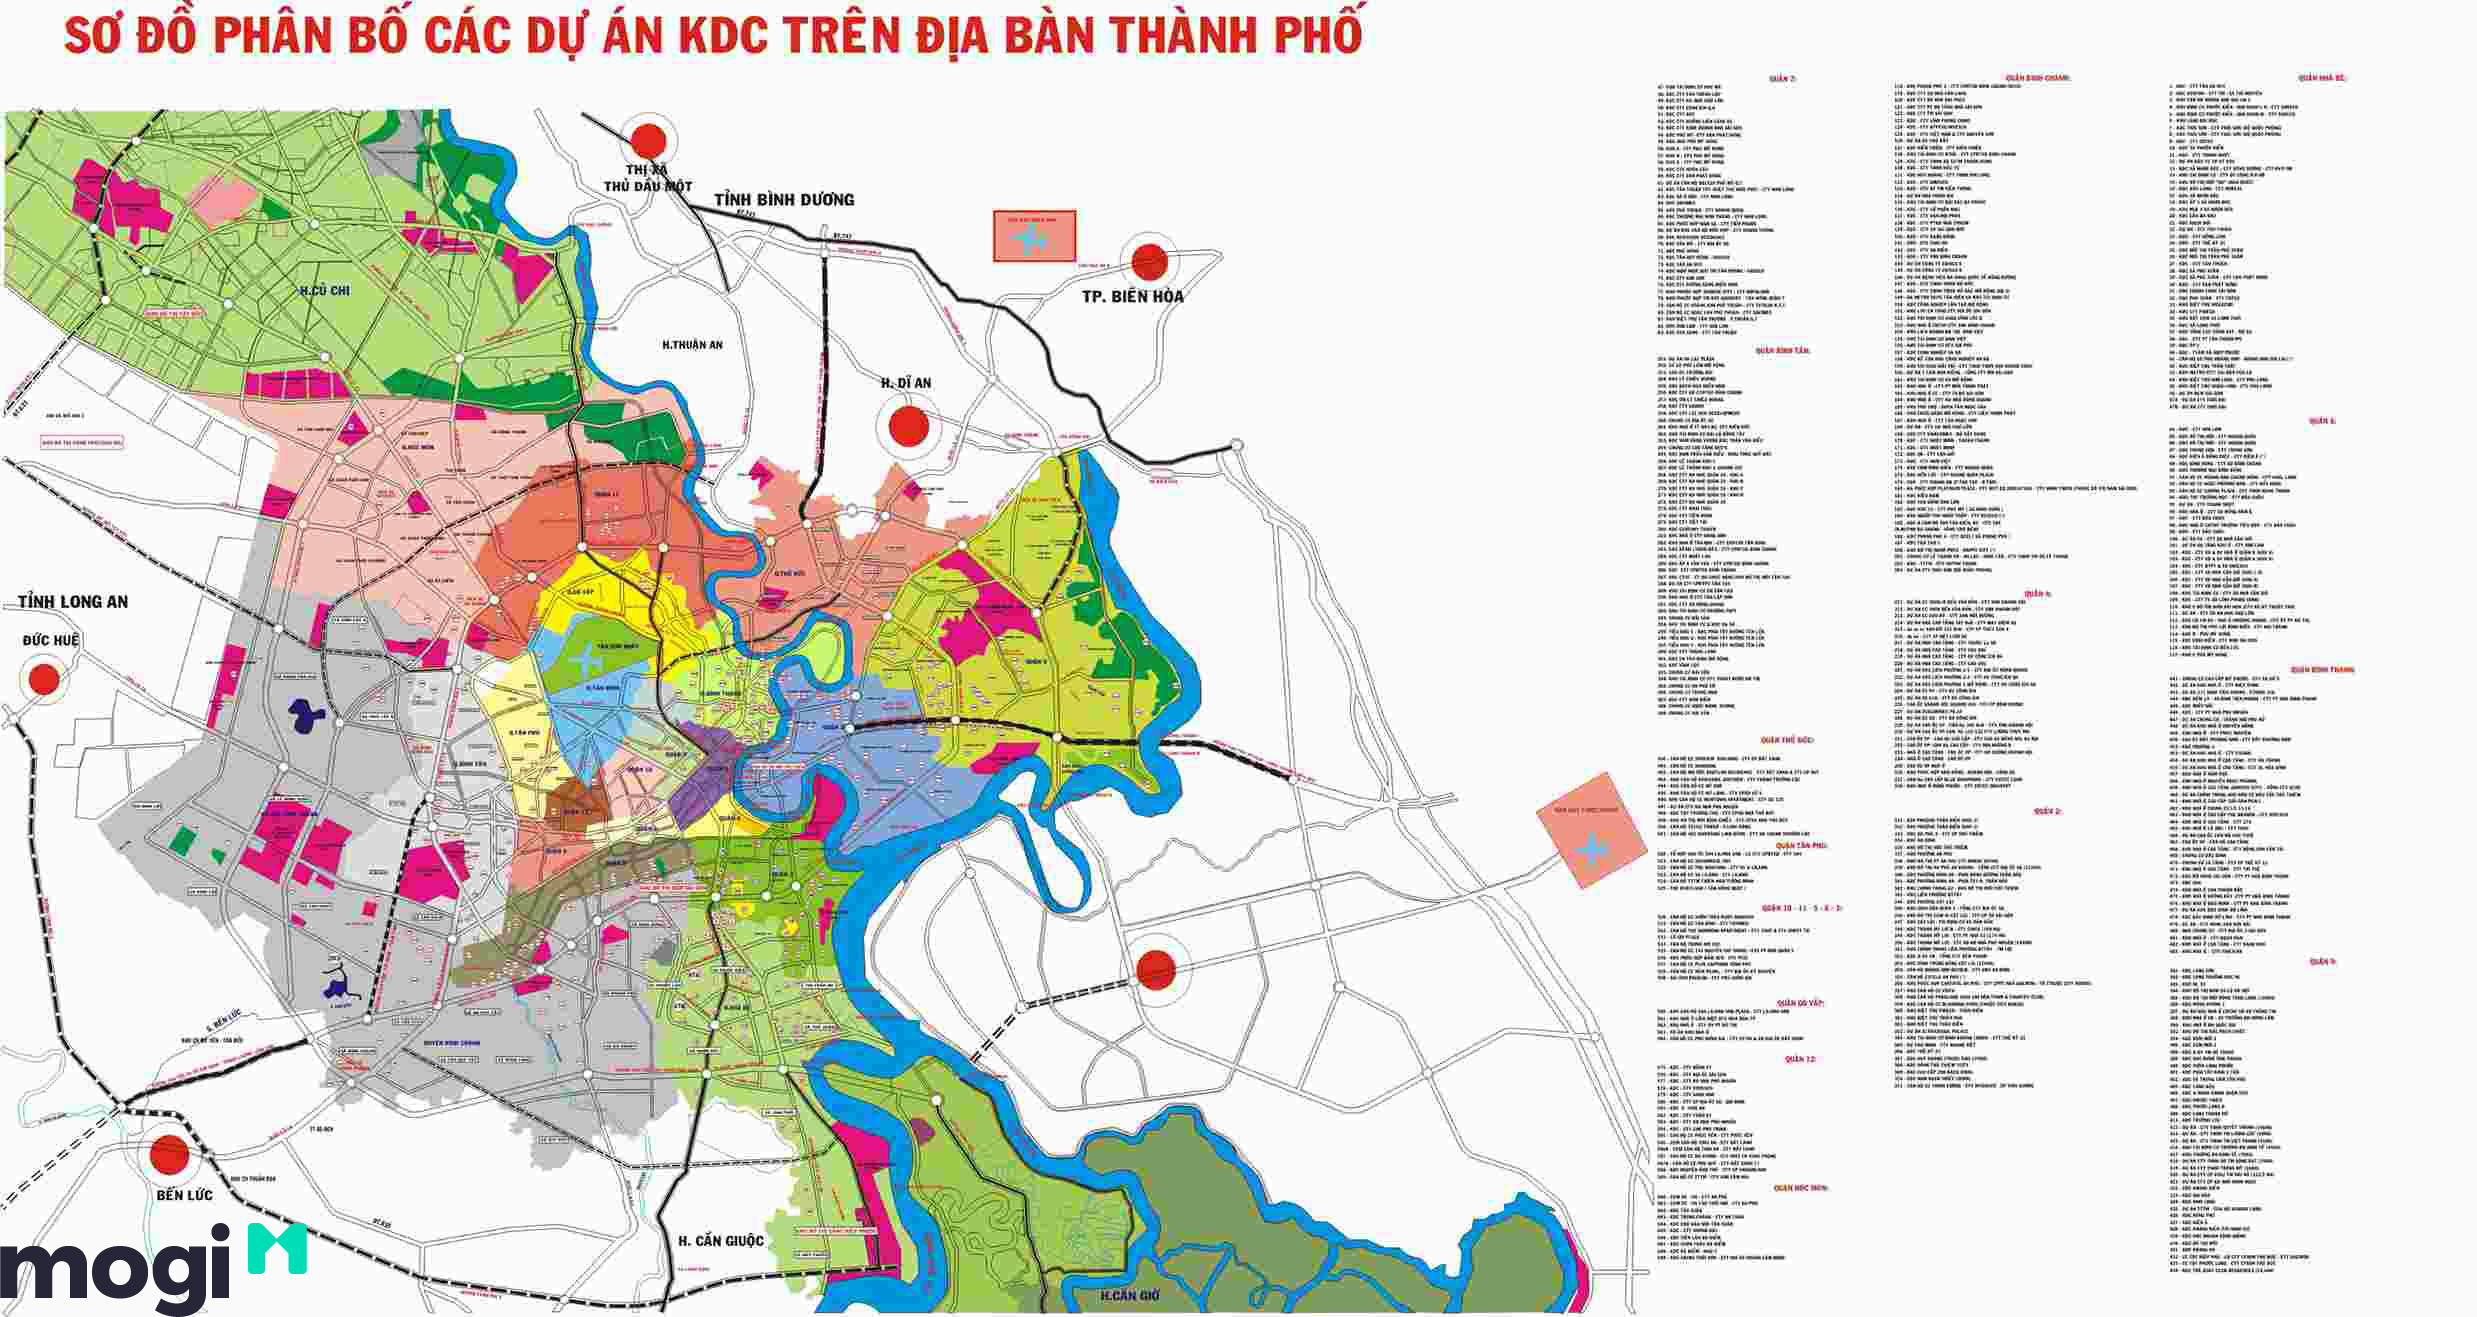 Quy hoạch thành phố Hồ Chí Minh đến năm 2025 2024 là lời cam kết của thành phố đối với chất lượng sống của người dân. Với những nỗ lực sáng tạo và nhiệt huyết, chúng ta sẽ cùng nhau xây dựng một thành phố thông minh, hiện đại và tiên tiến vào những năm tới.